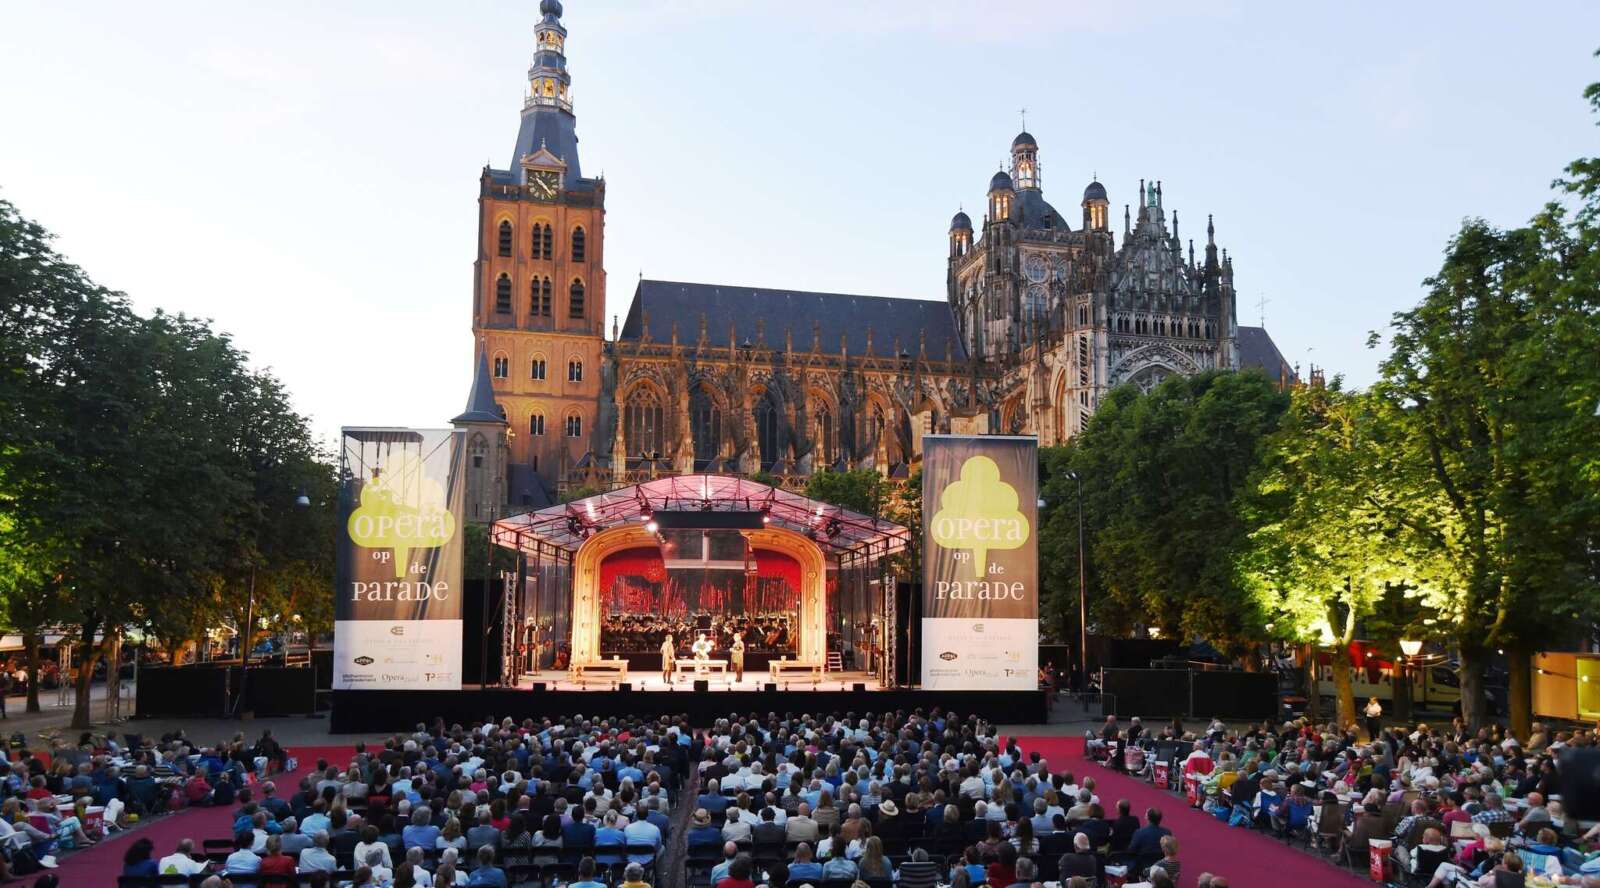 Opera op de Parade Den Bosch City